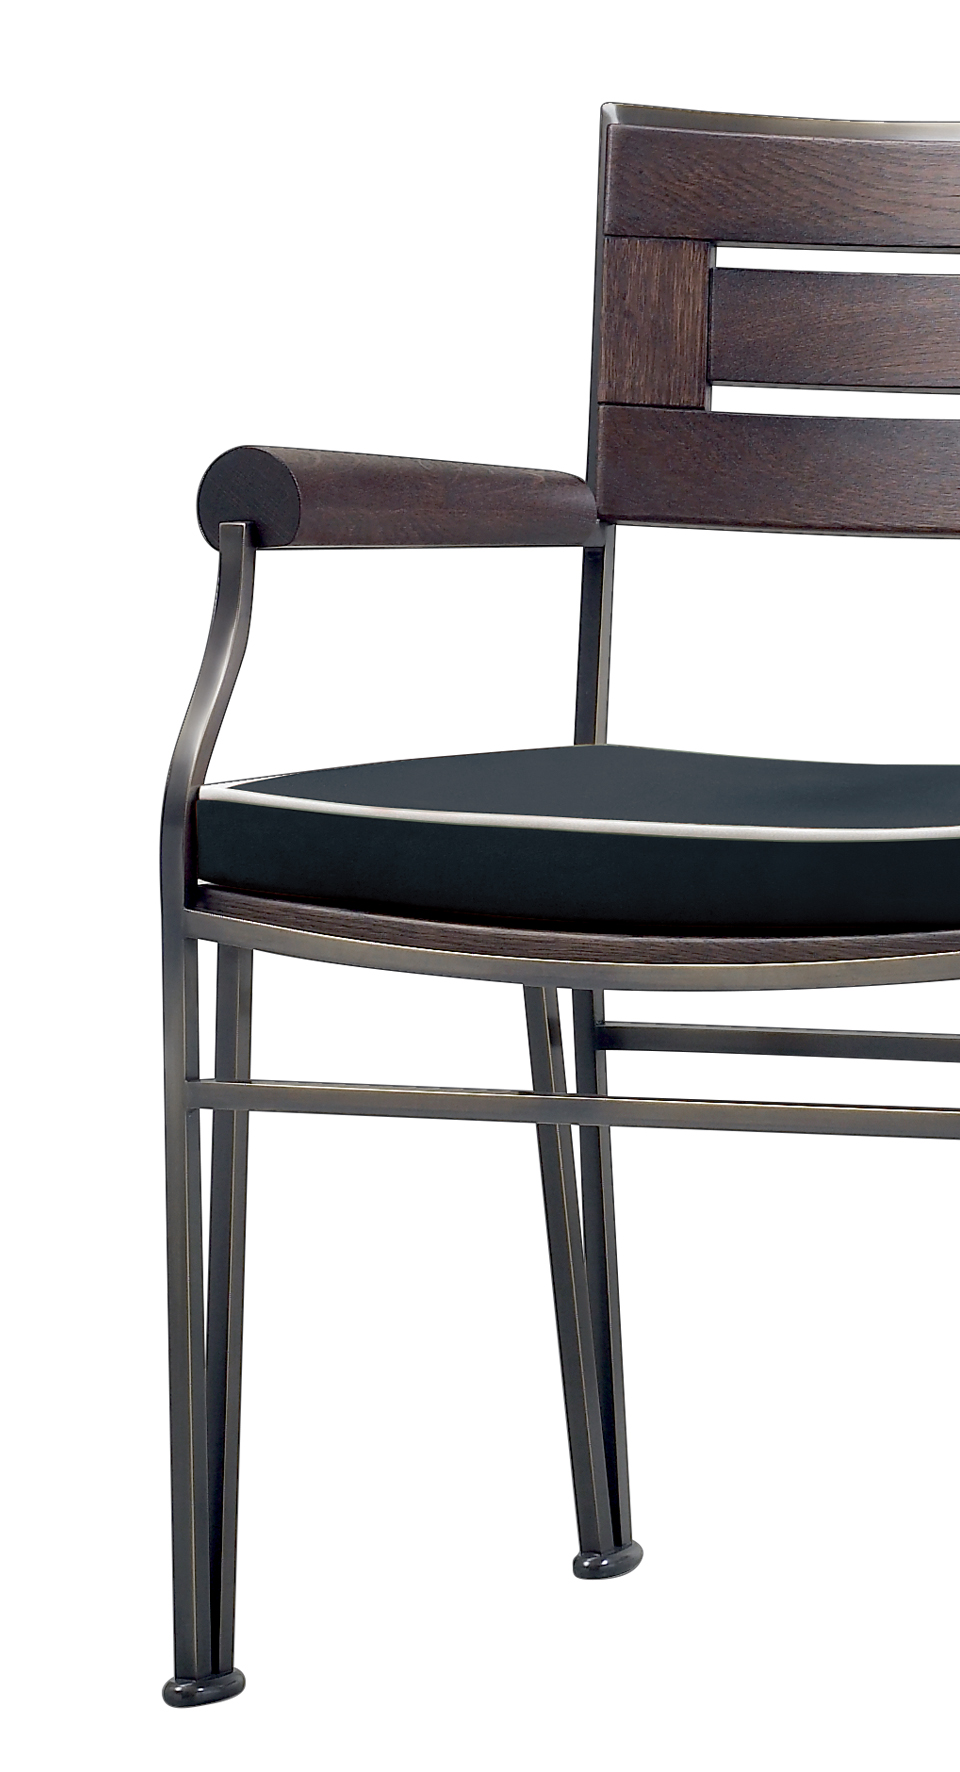 Cernobbio è una sedia in bronzo e frassino, del catalogo da esterni di Promemoria | Promemoria